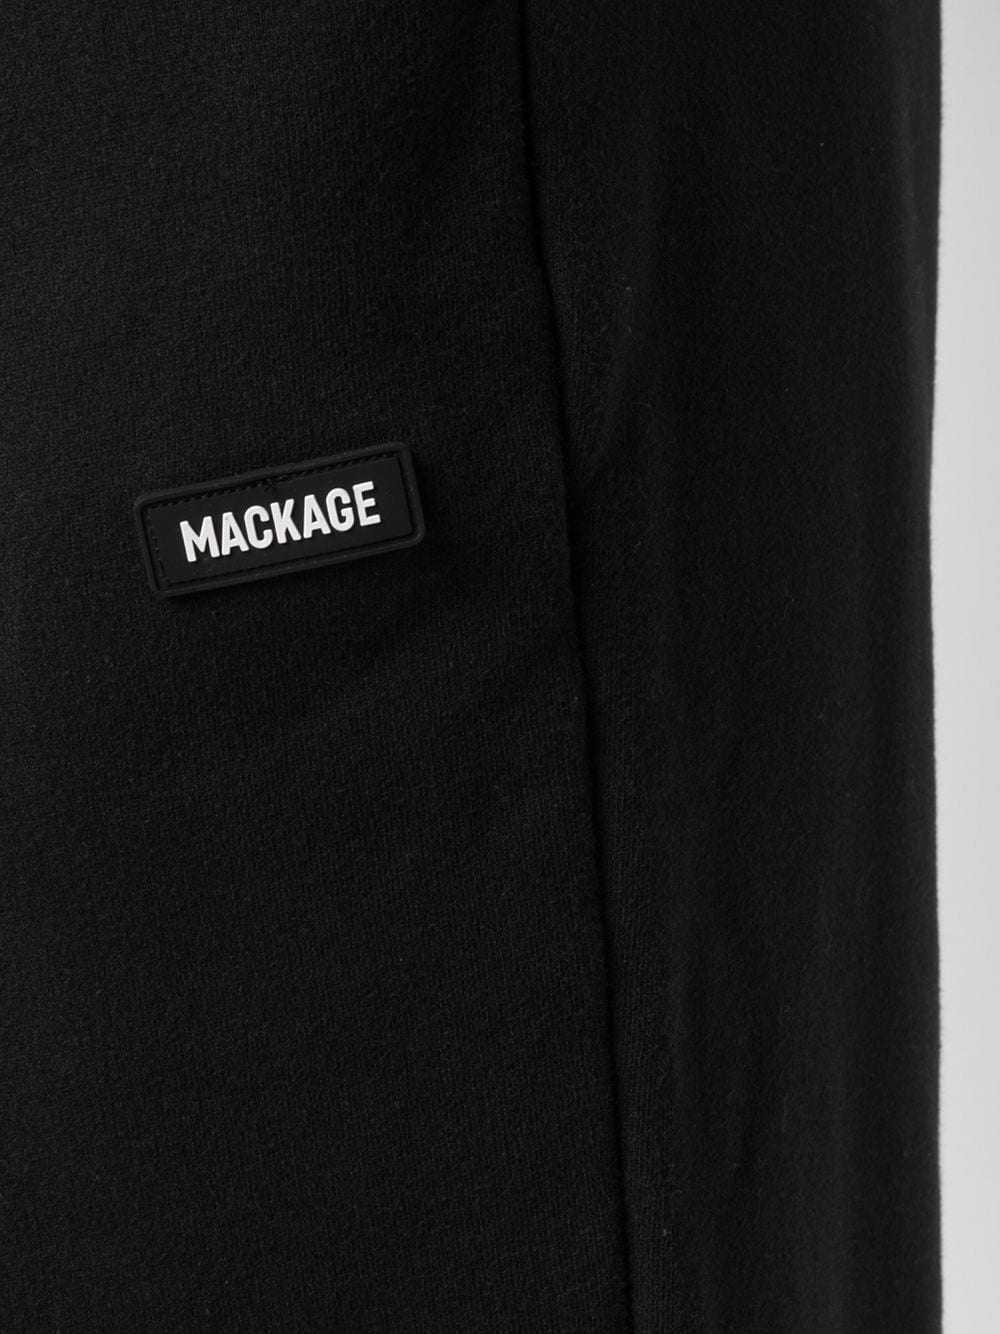 фото Mackage спортивные брюки с вышитым логотипом